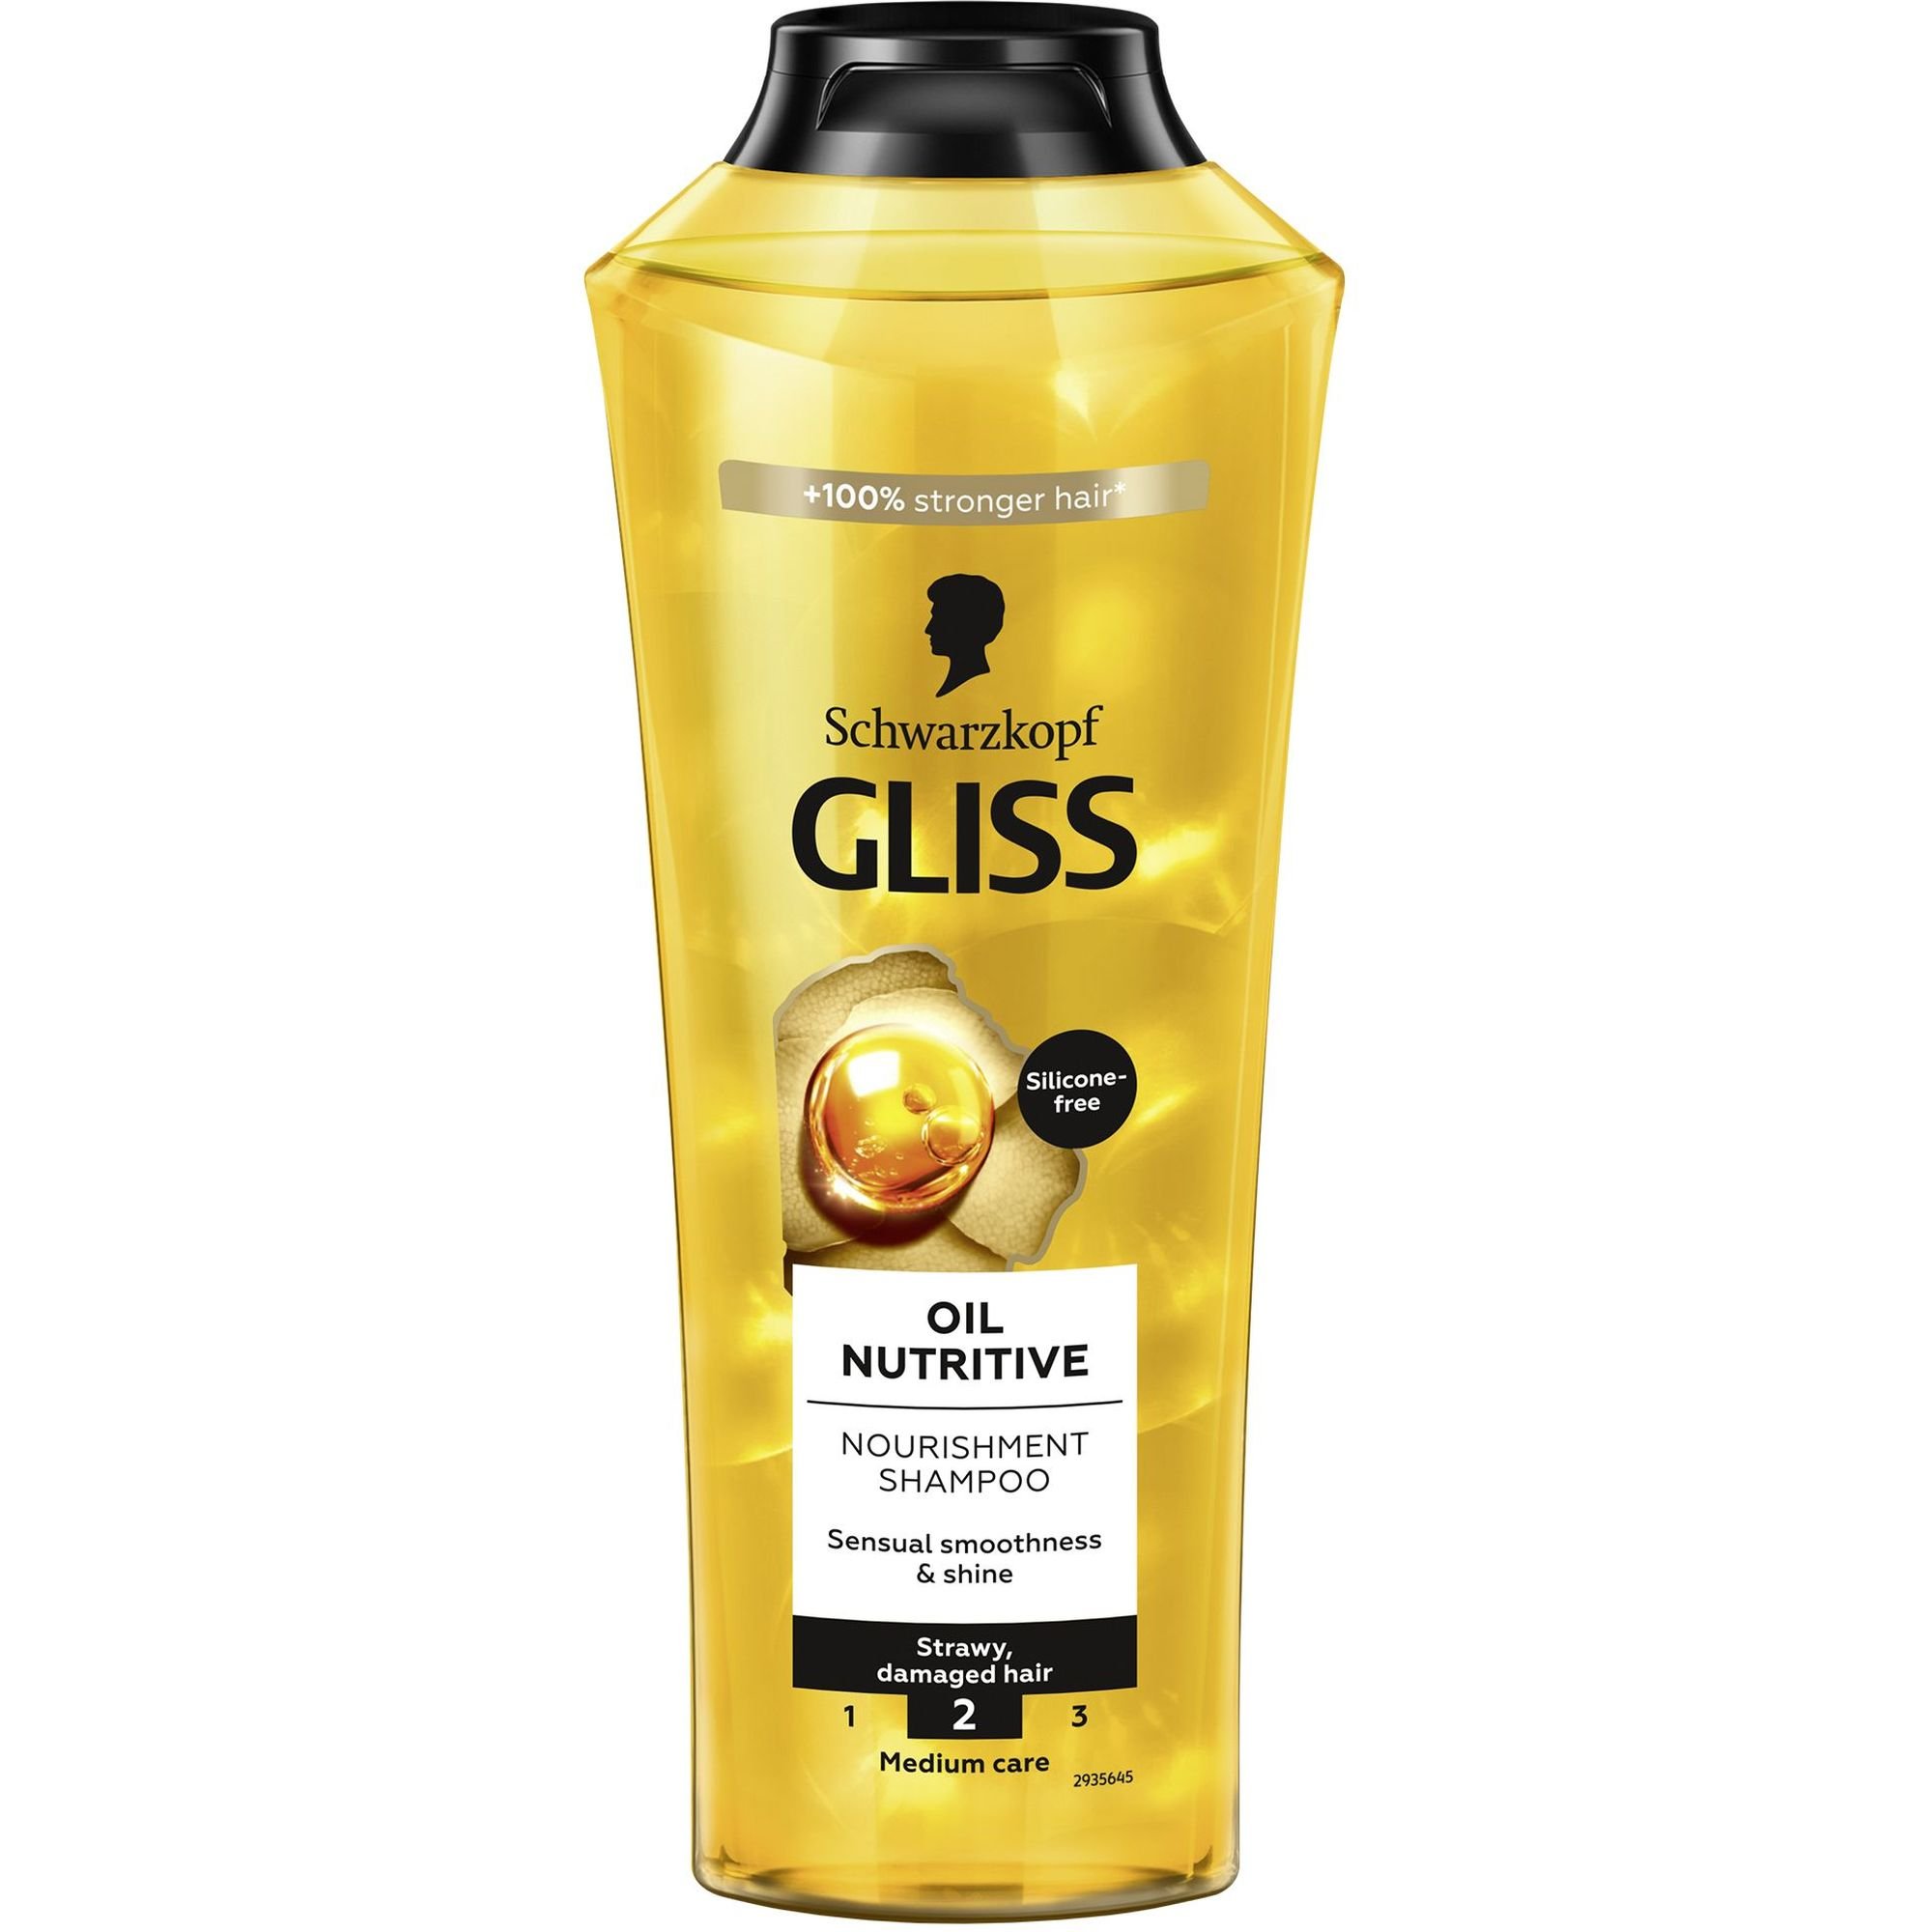 Шампунь Gliss Oil Nutritive для сухих и поврежденных волос 400 мл - фото 1